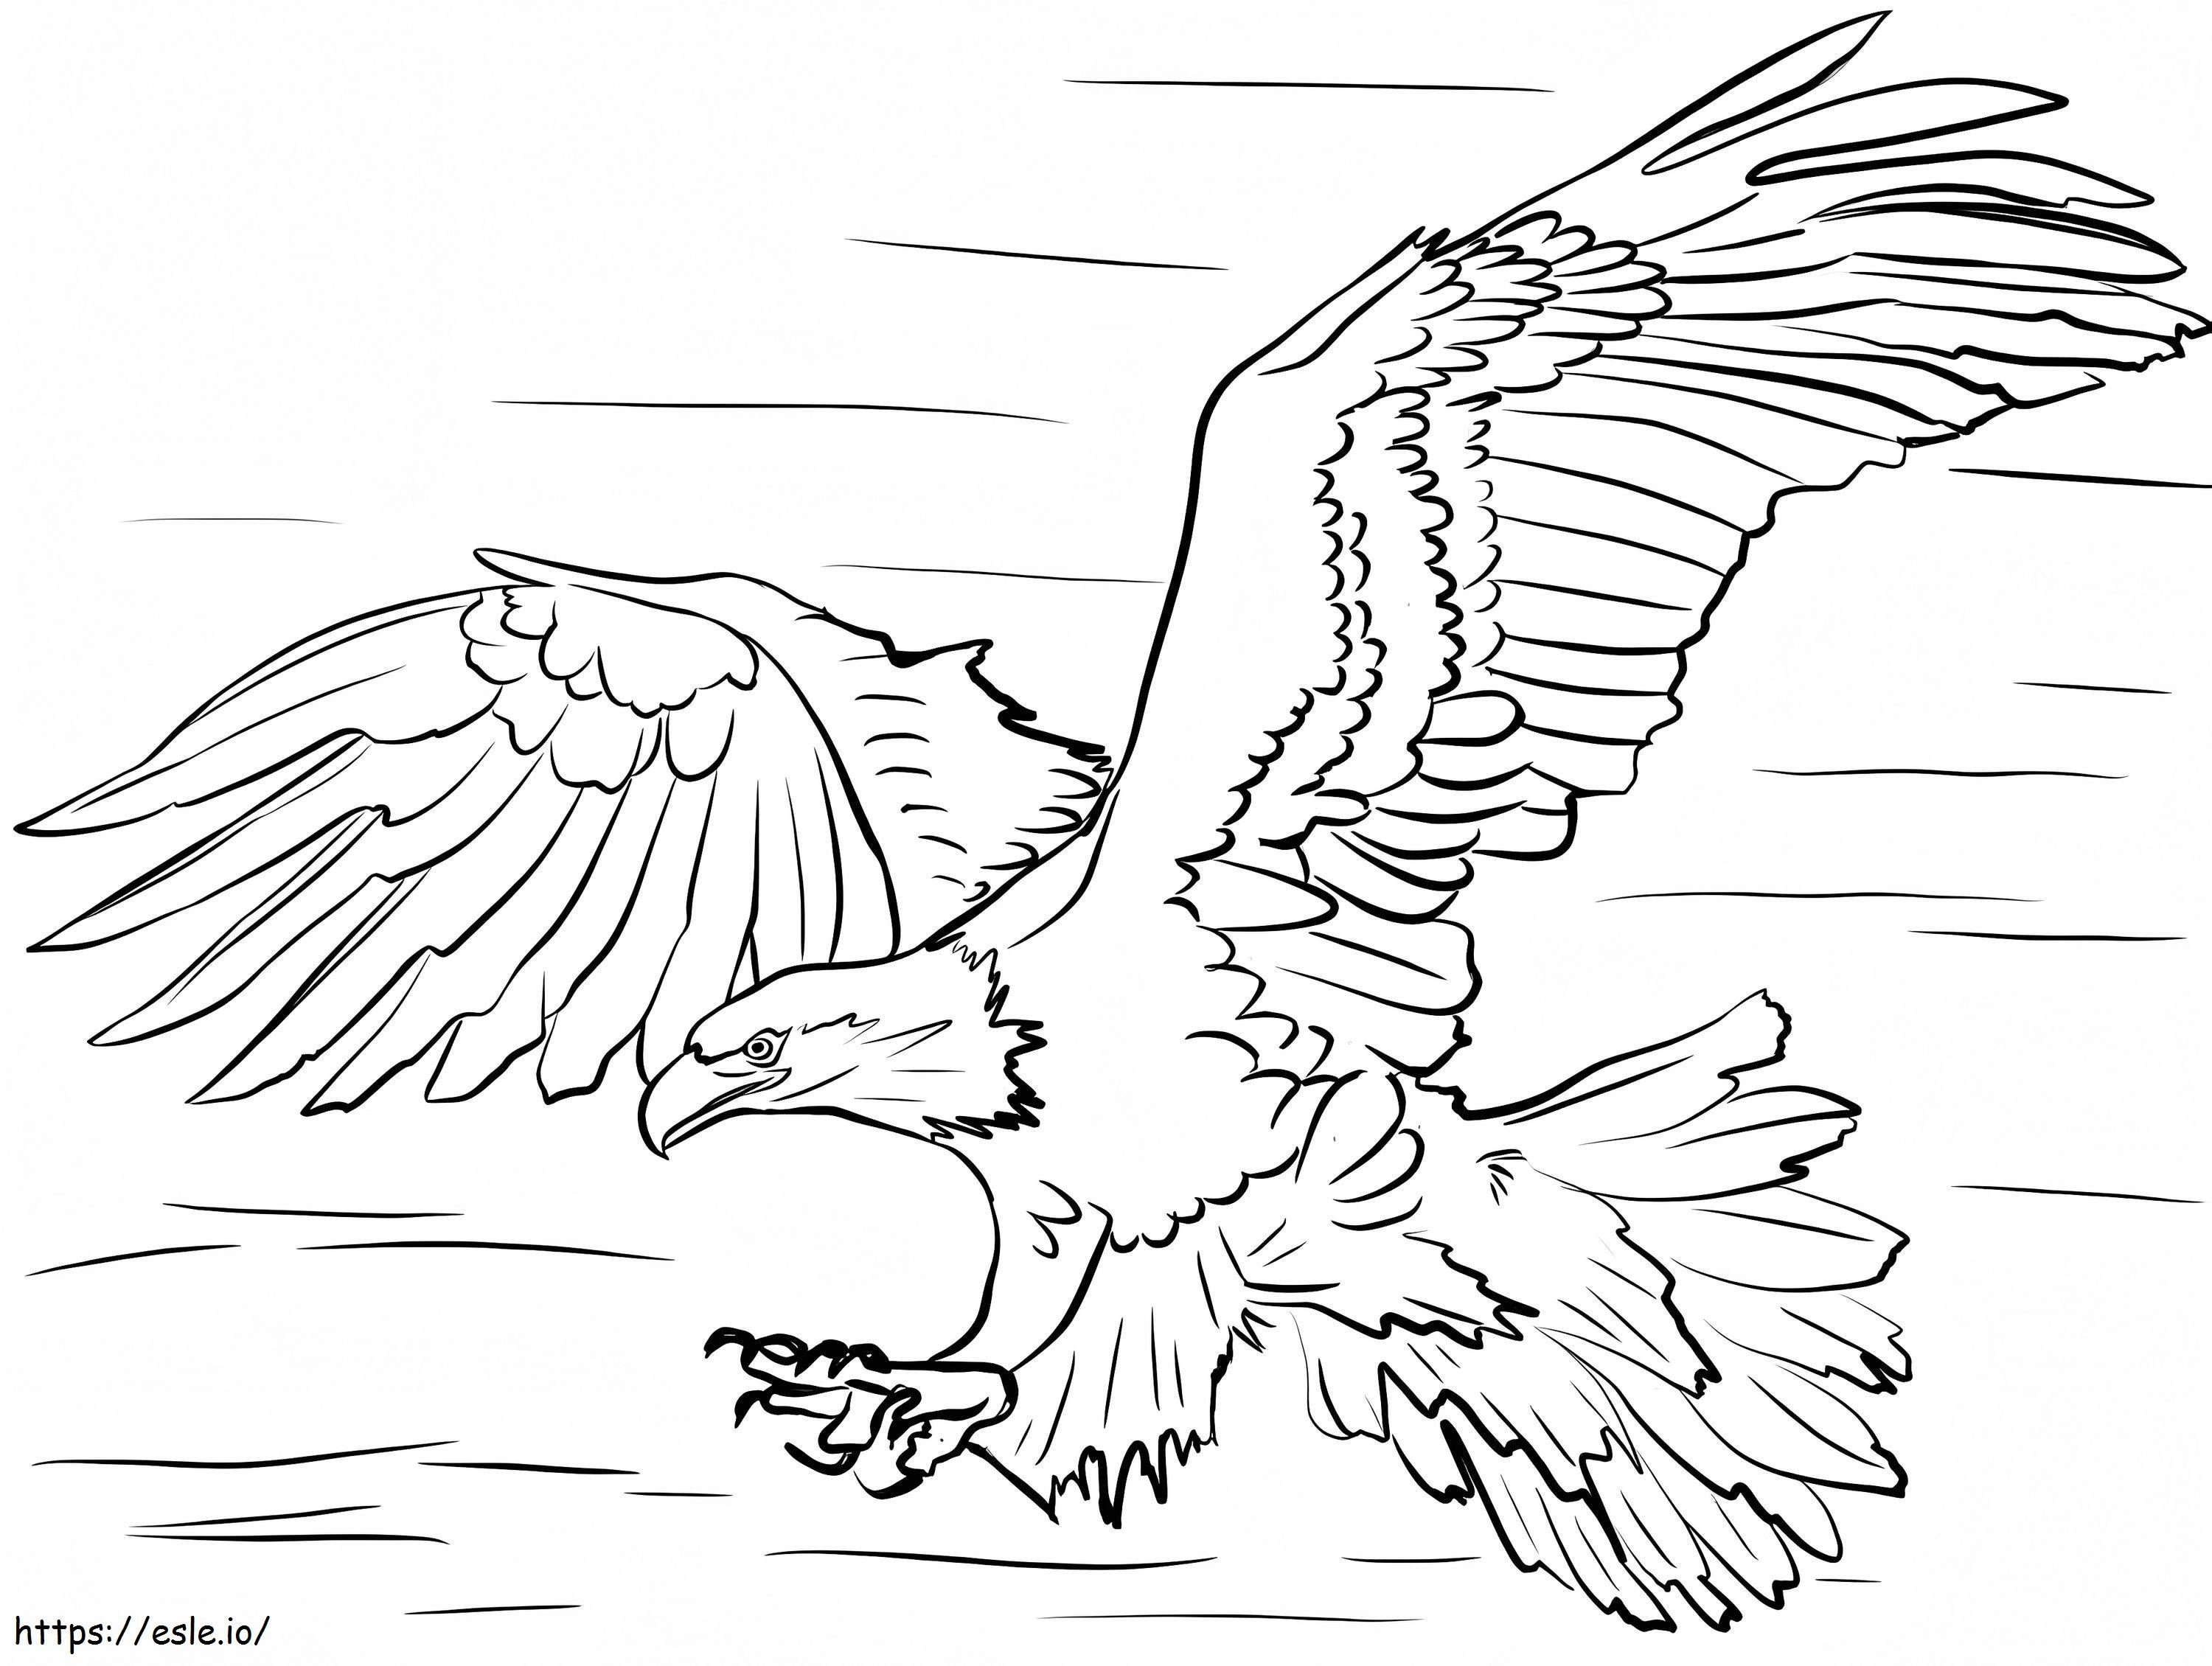 Weißkopfseeadler 2 ausmalbilder